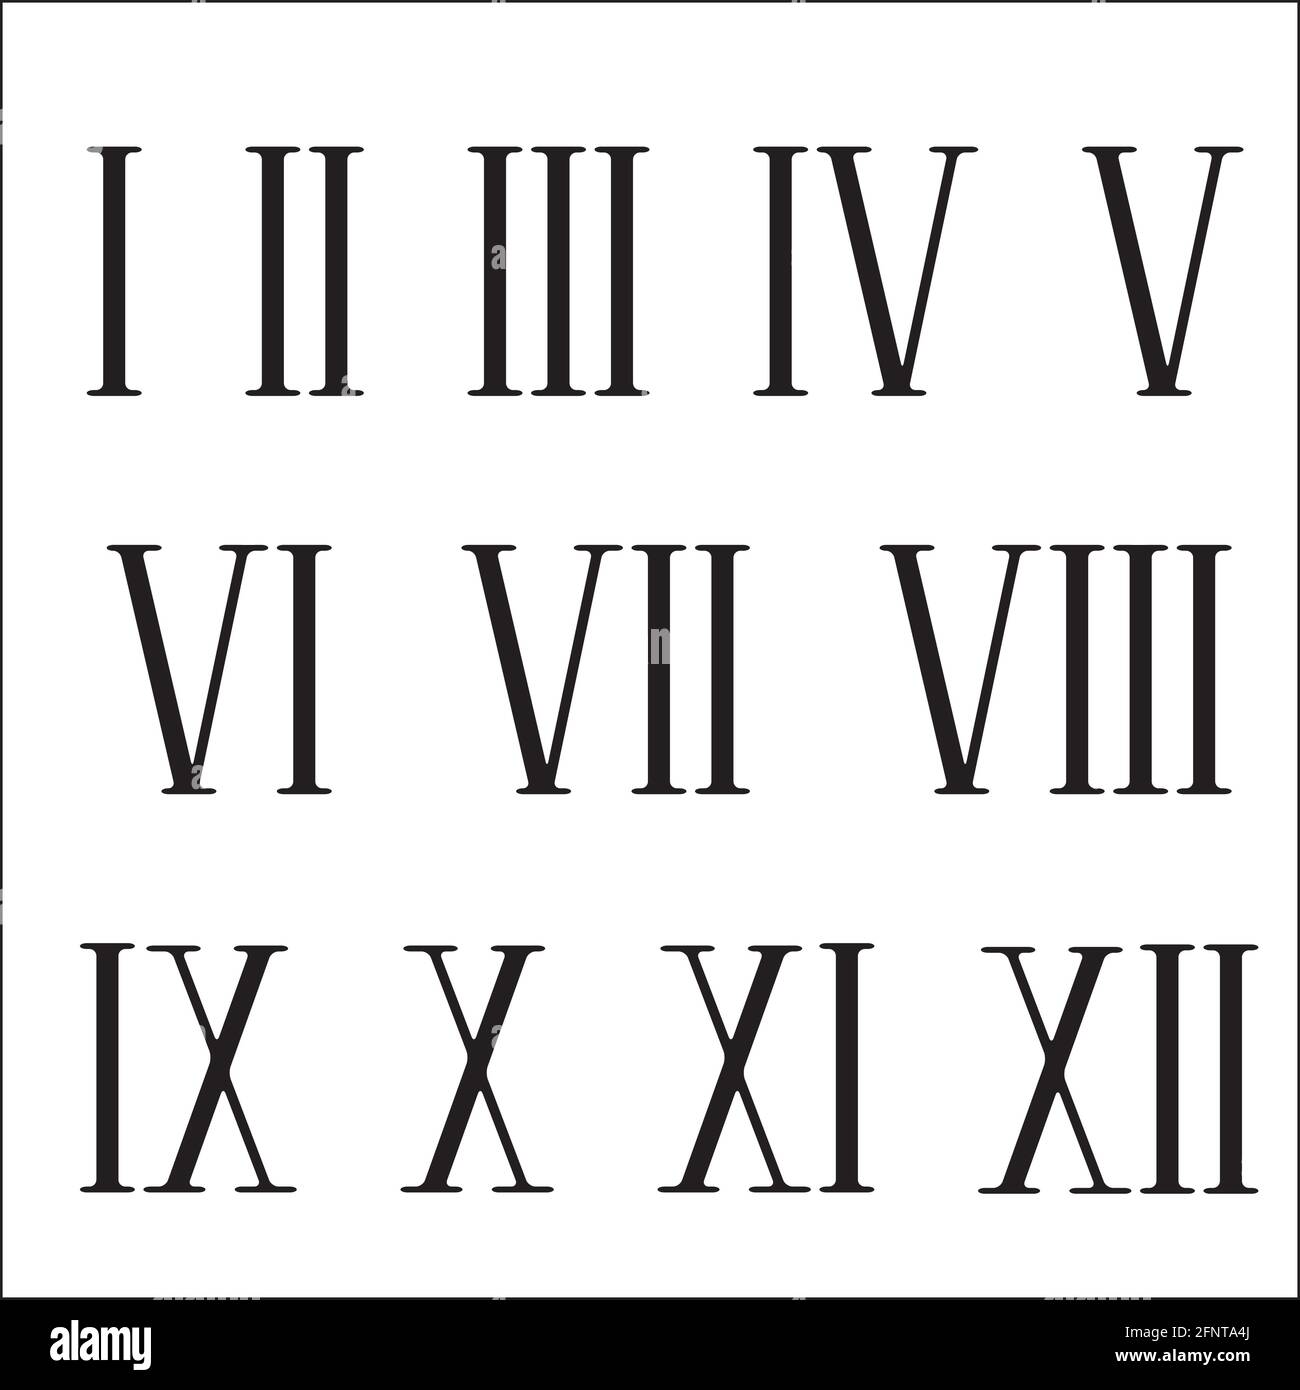 Retro roman numerals, great design for any purposes. Stock Vector